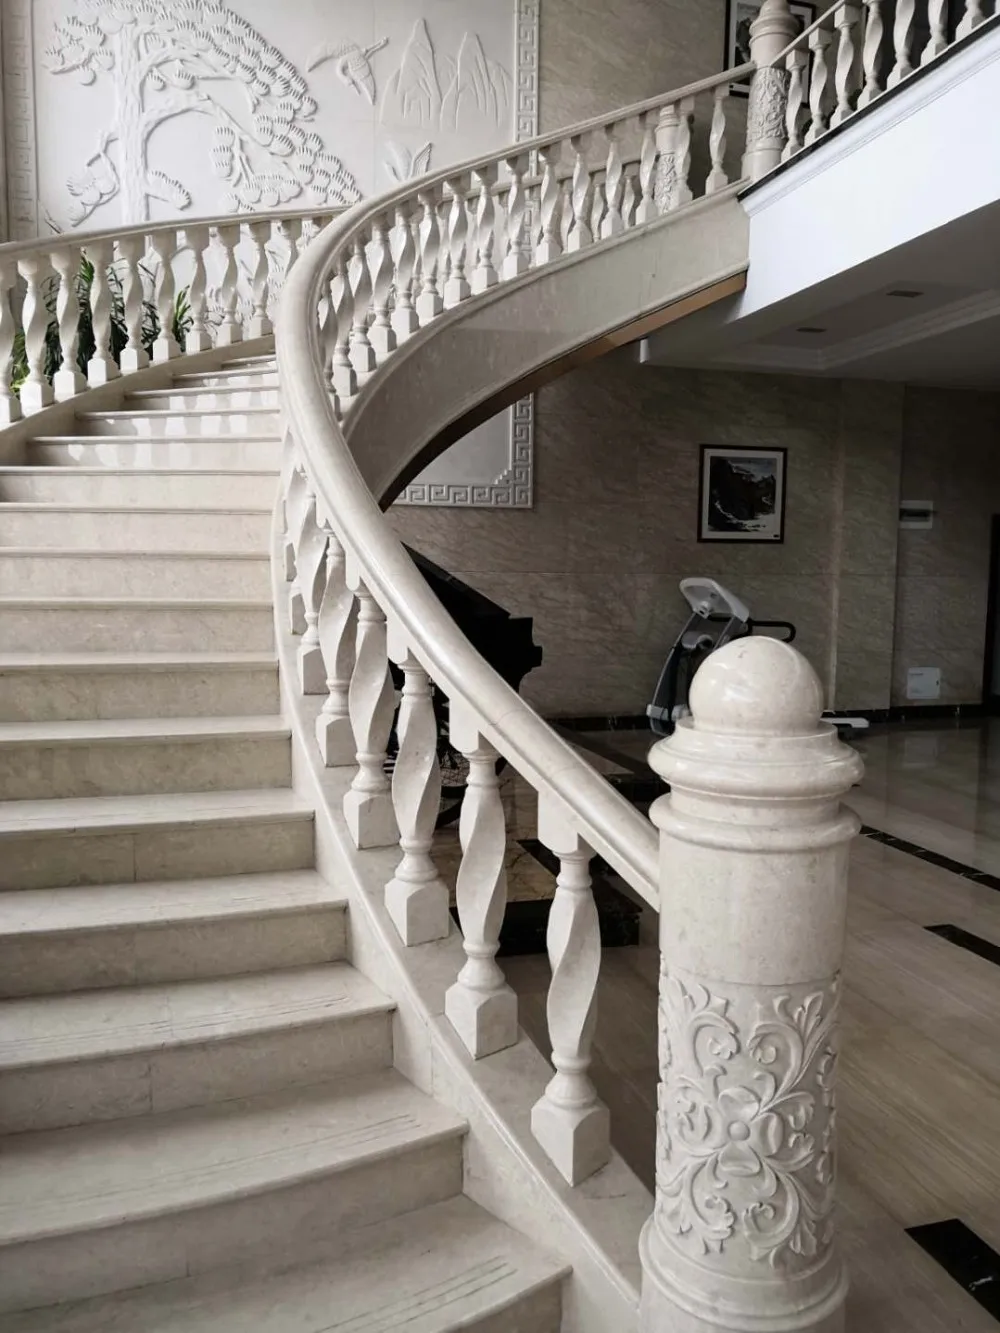 螺旋楼梯楼梯 ralling 天然石大理石扶手,大理石栏杆,雕刻室内白色